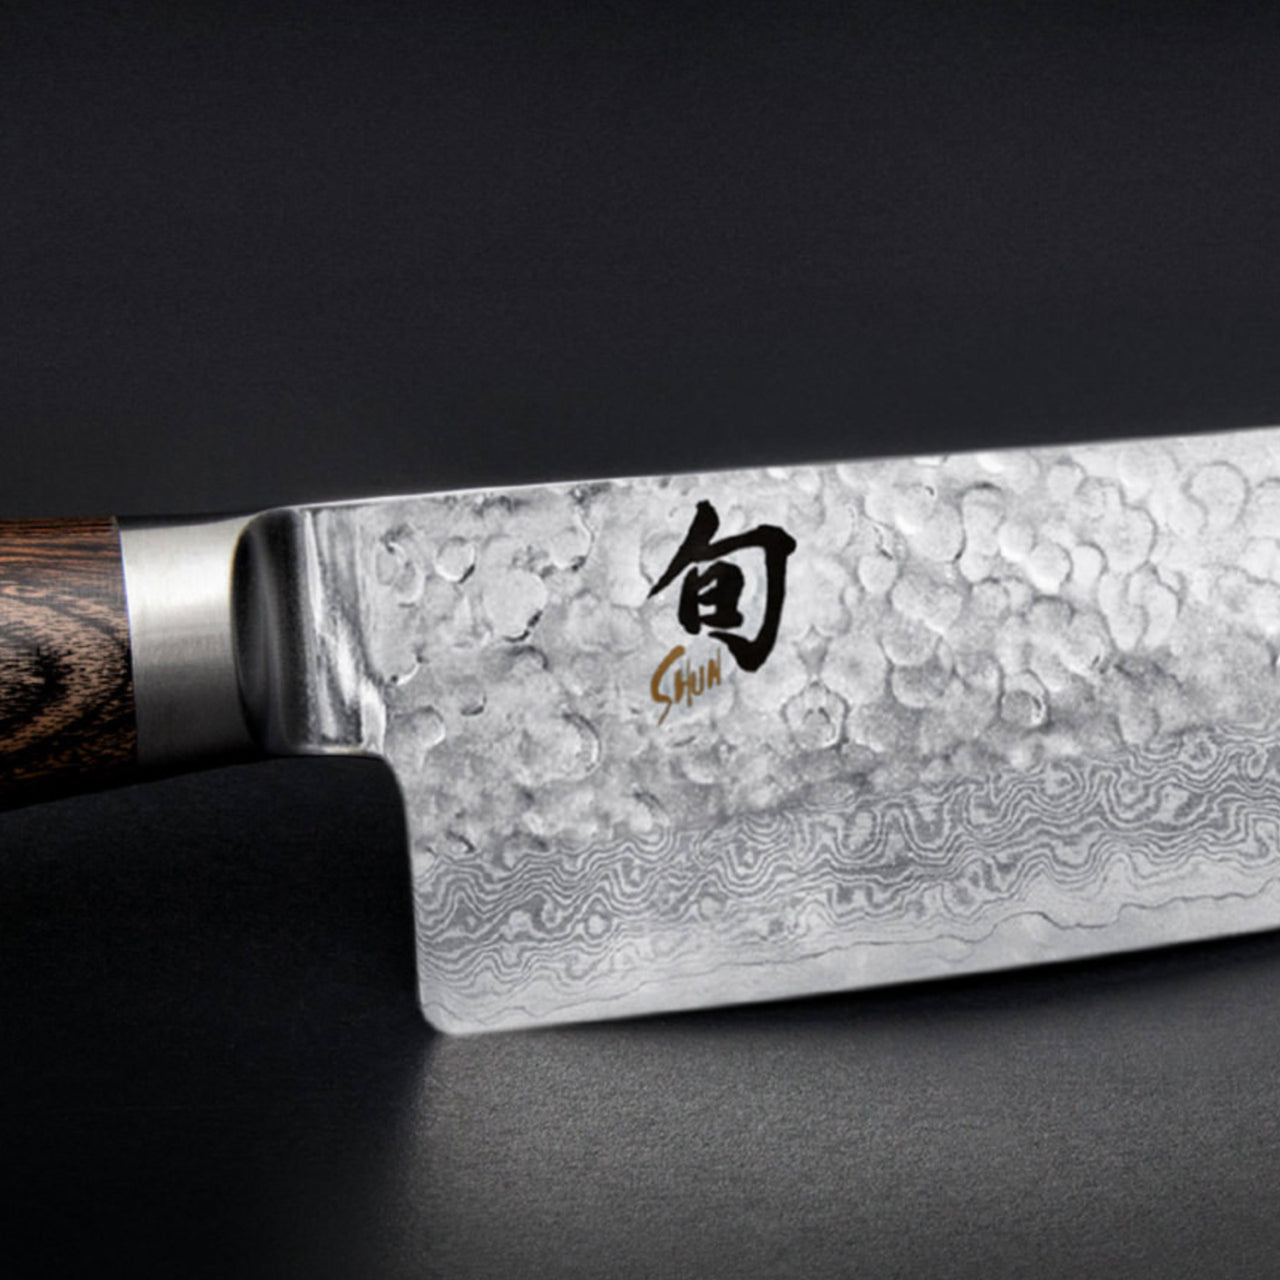 Kai Shun Premier Chef & Utility Knife Set